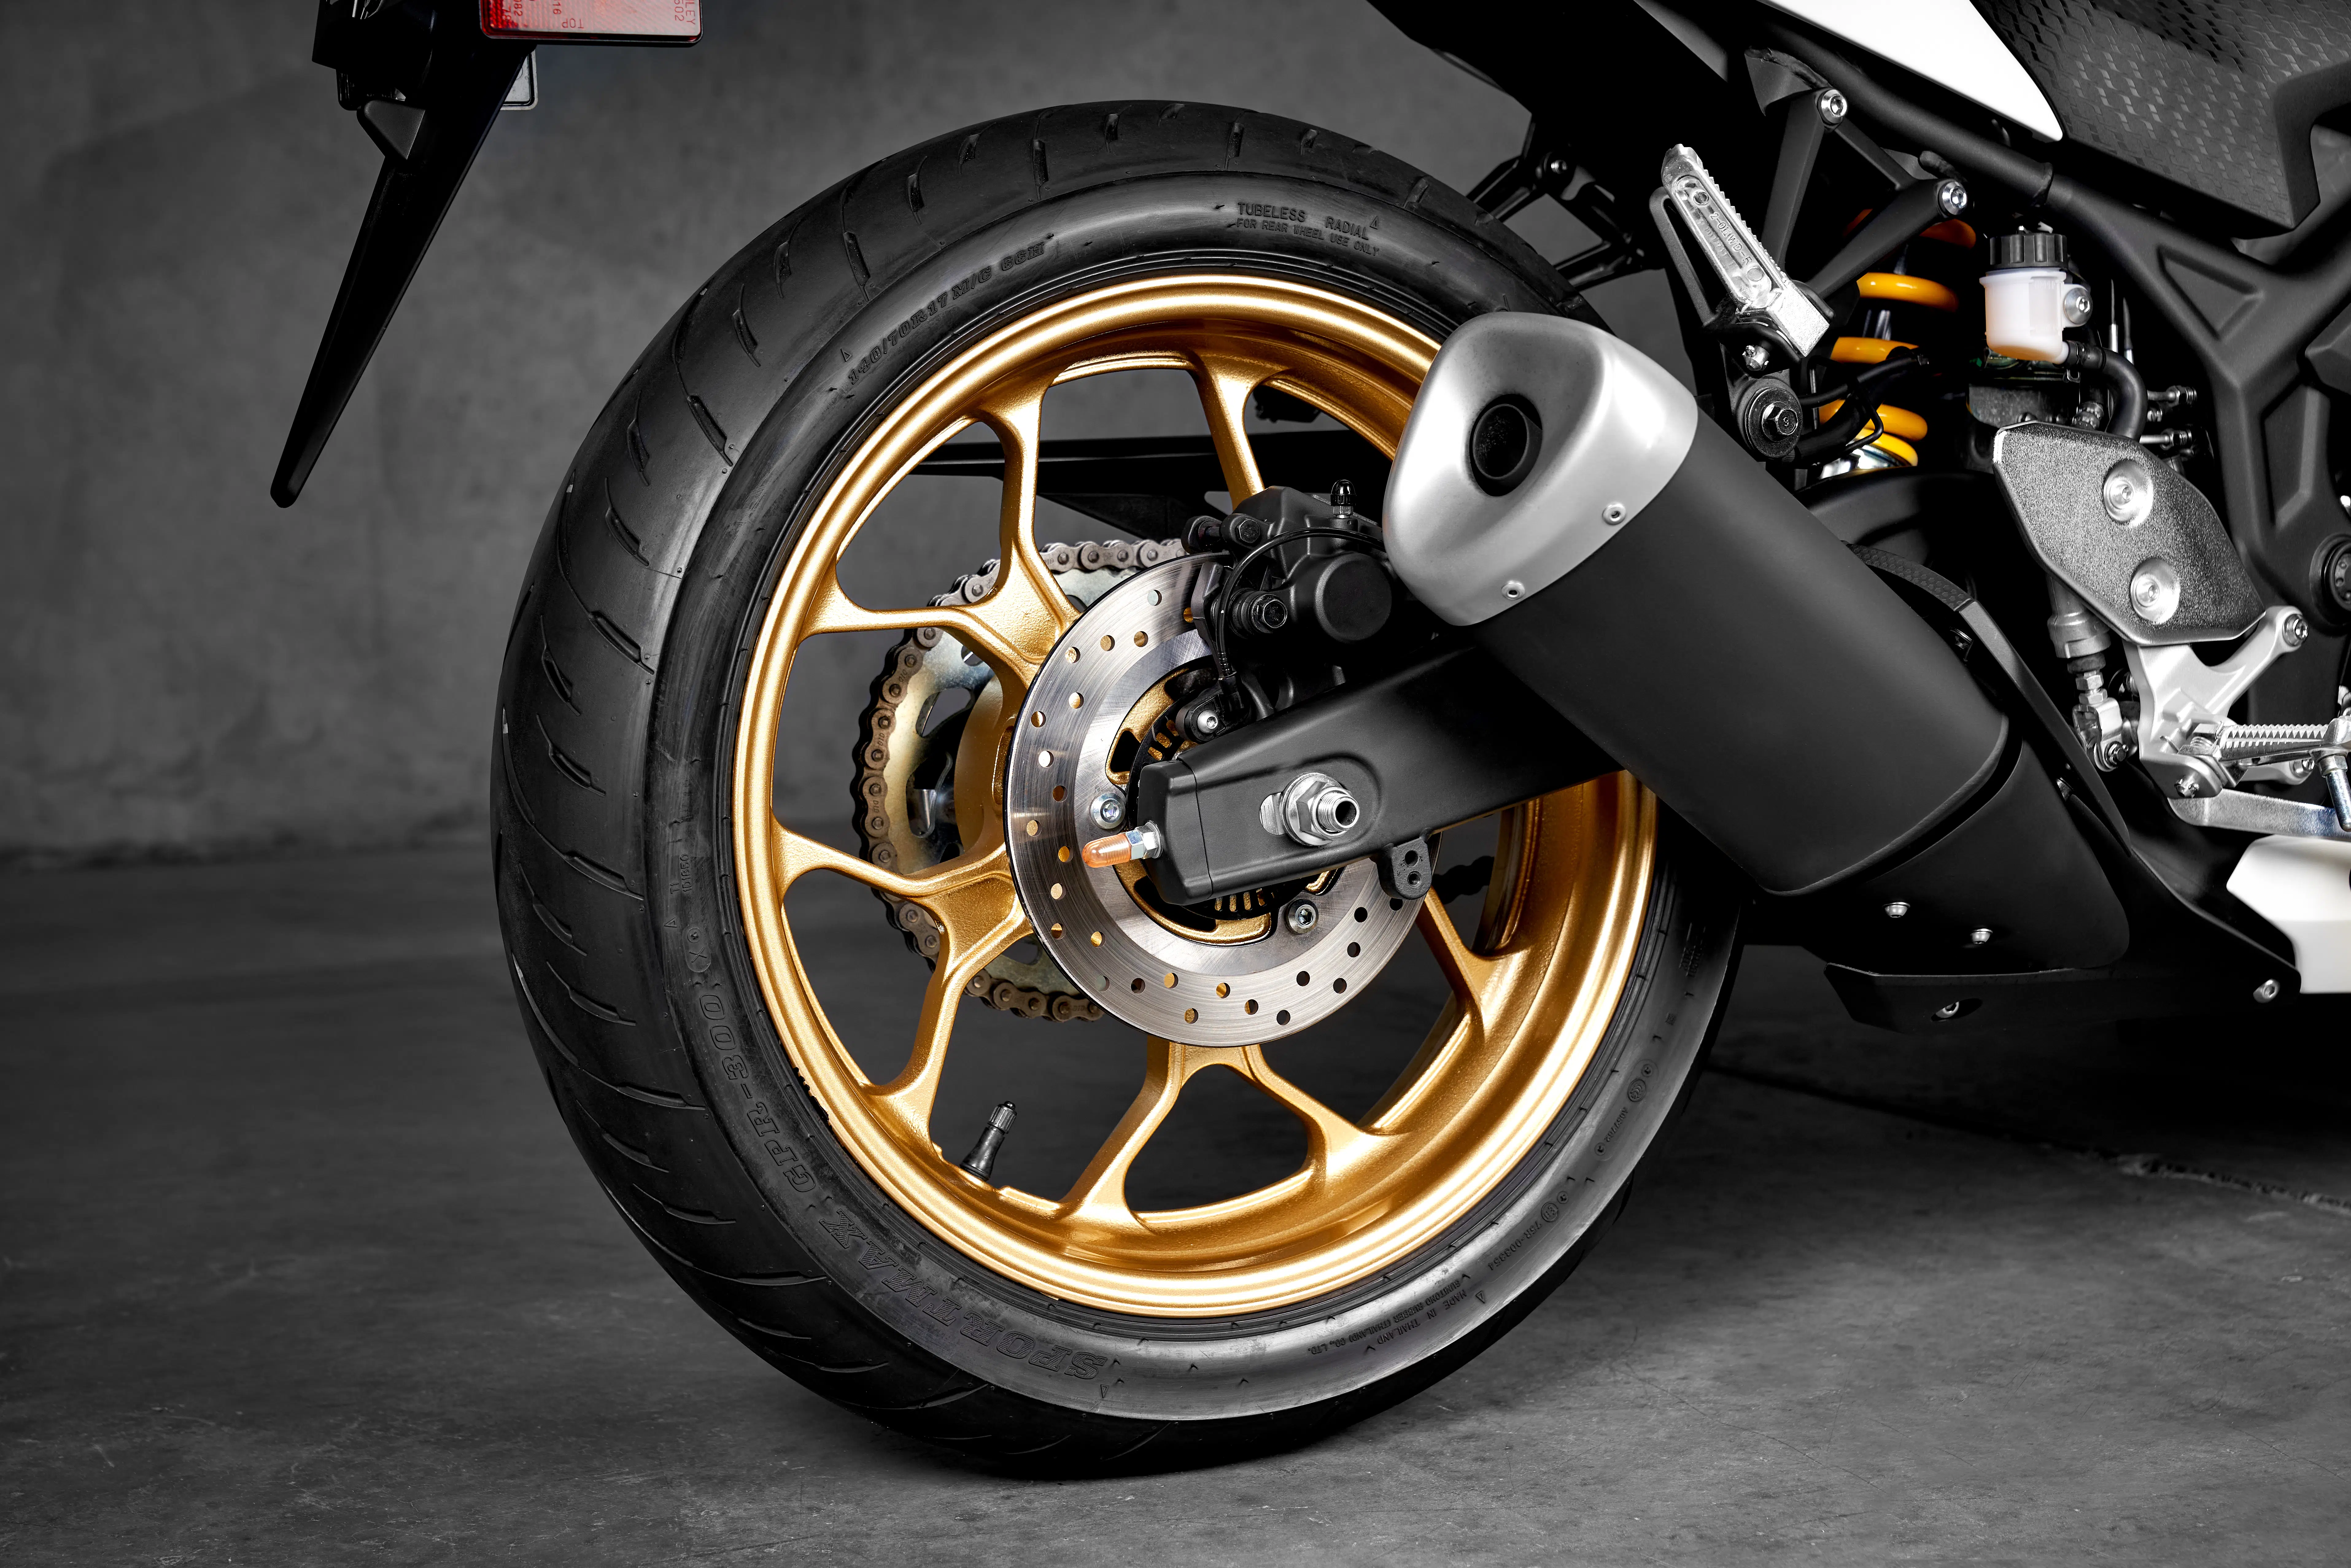 Les roues de couleur or donnent vraiment du style à cette moto Supersport. Source: https://www.yamaha-motor.ca/fr/route/motocyclettes